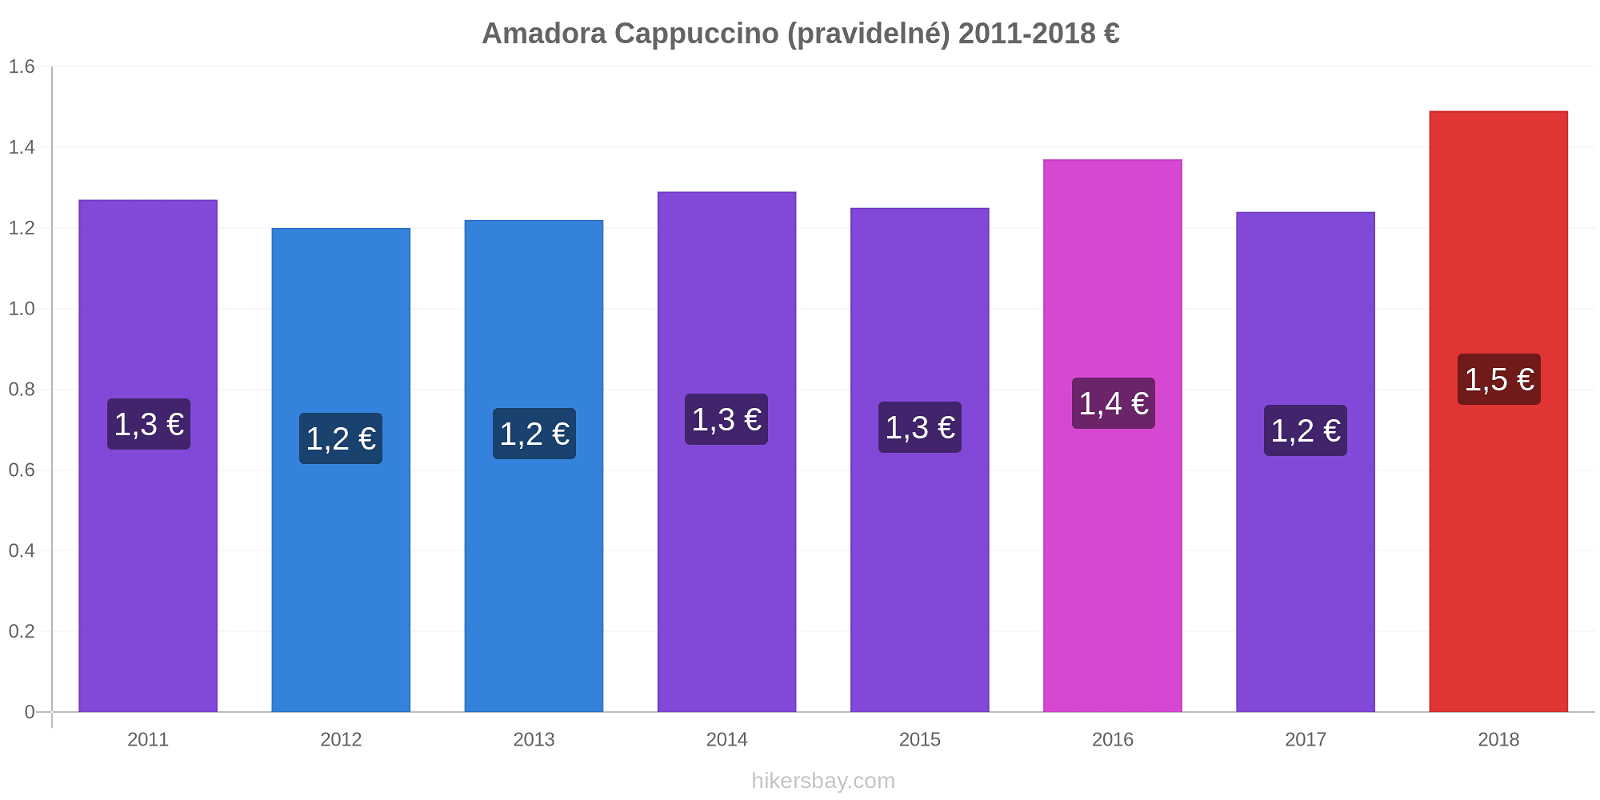 Amadora změny cen Cappuccino (pravidelné) hikersbay.com